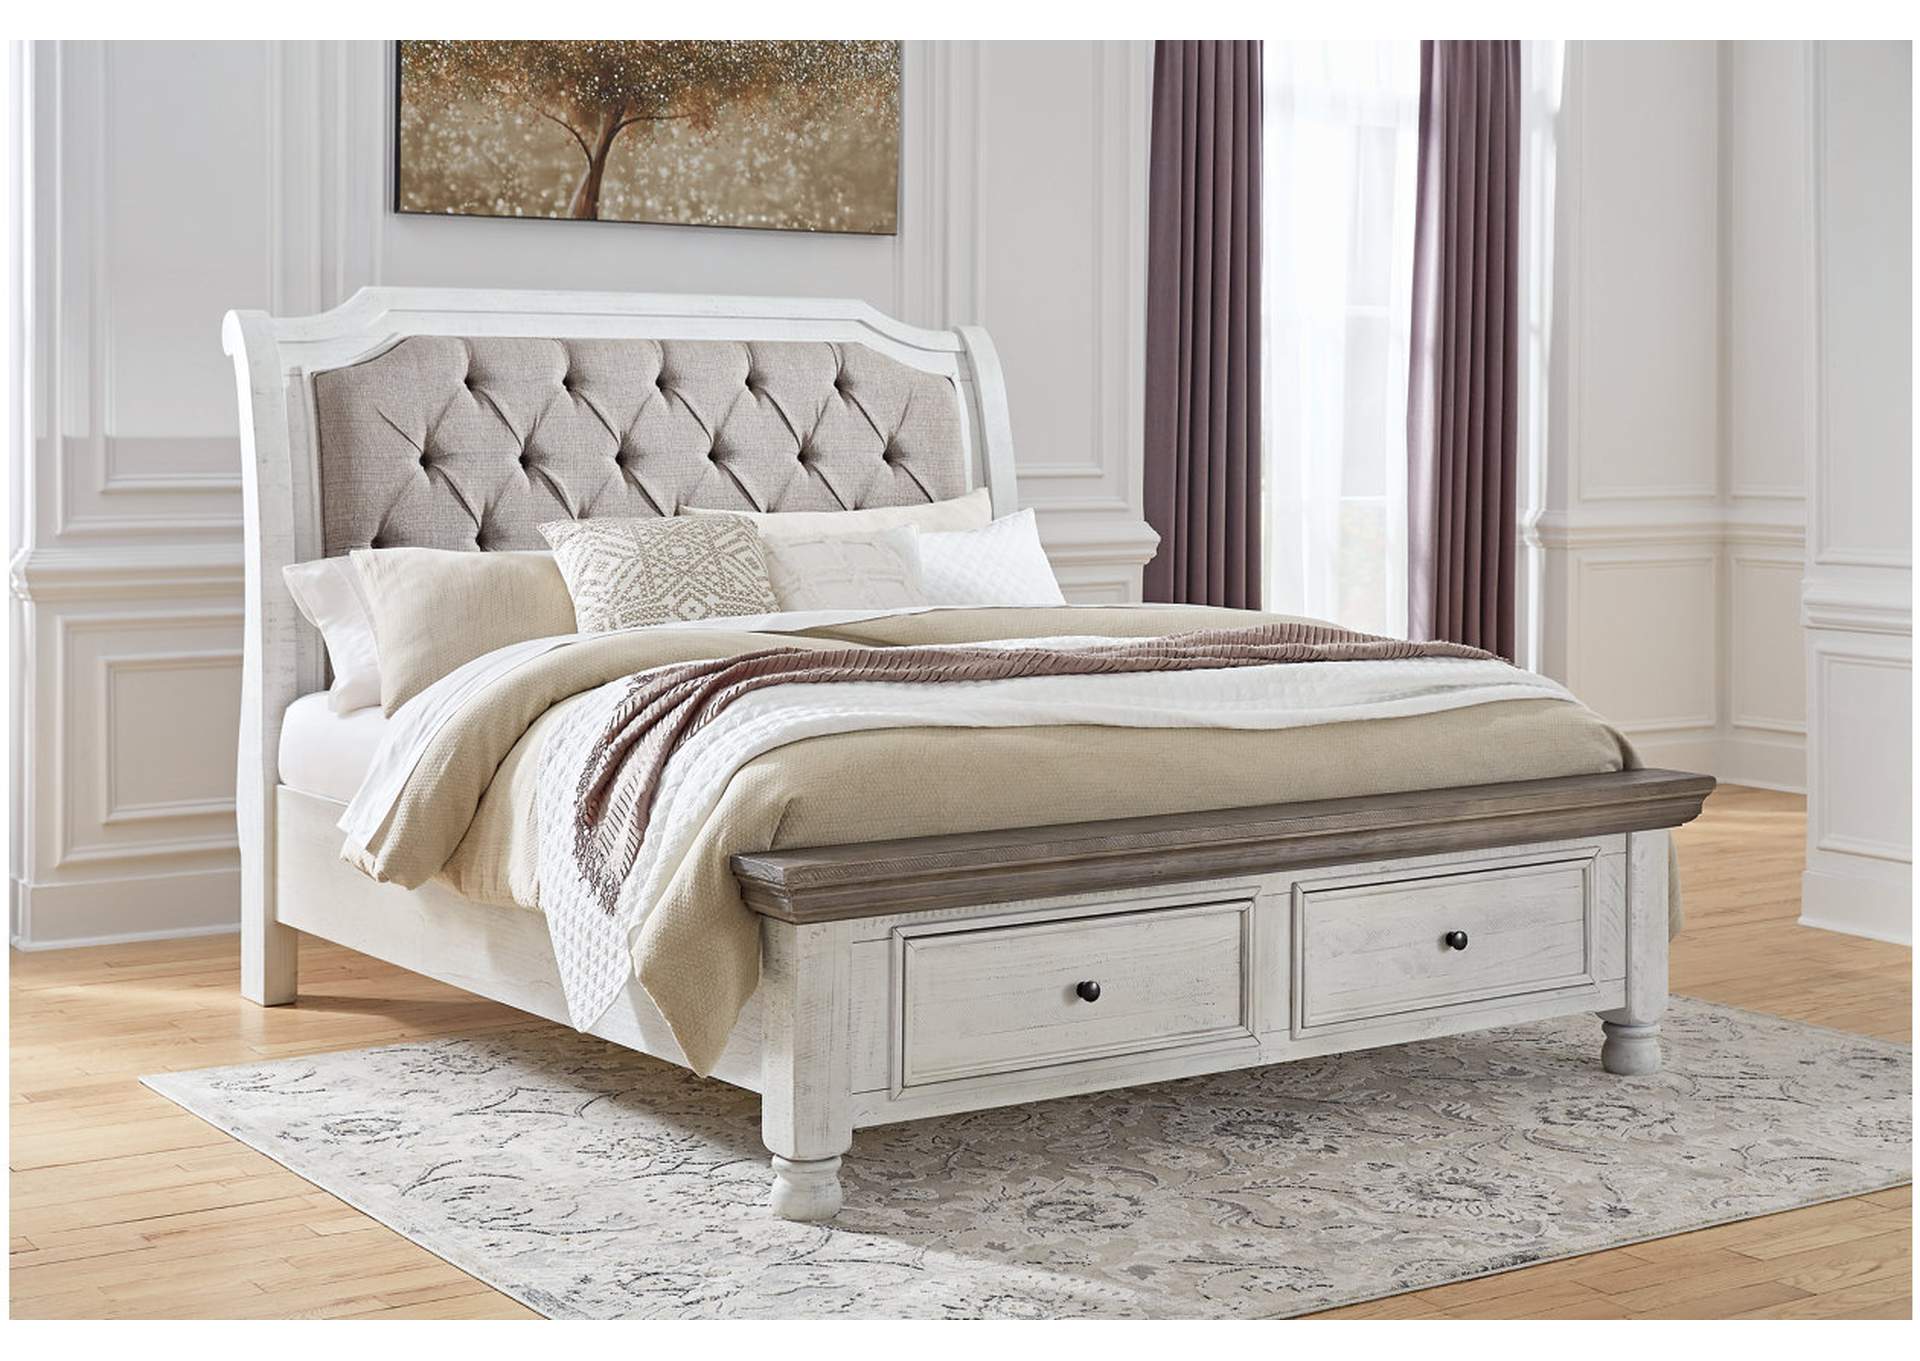 Havalance Queen Sleigh Bed with Storage, Dresser and Mirror,Millennium